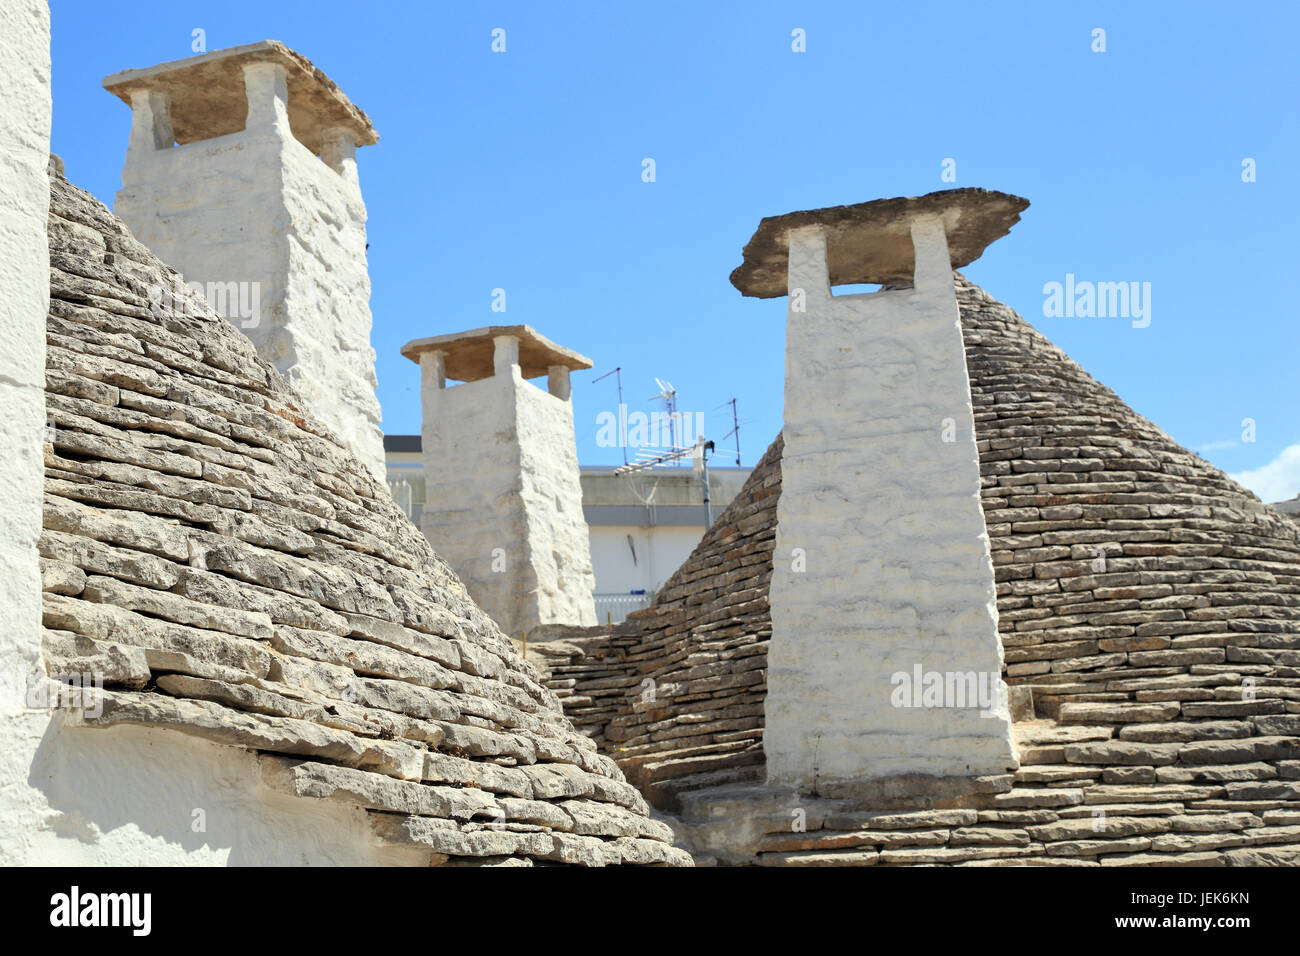 Chimneys at trulli house, Italy Stock Photo